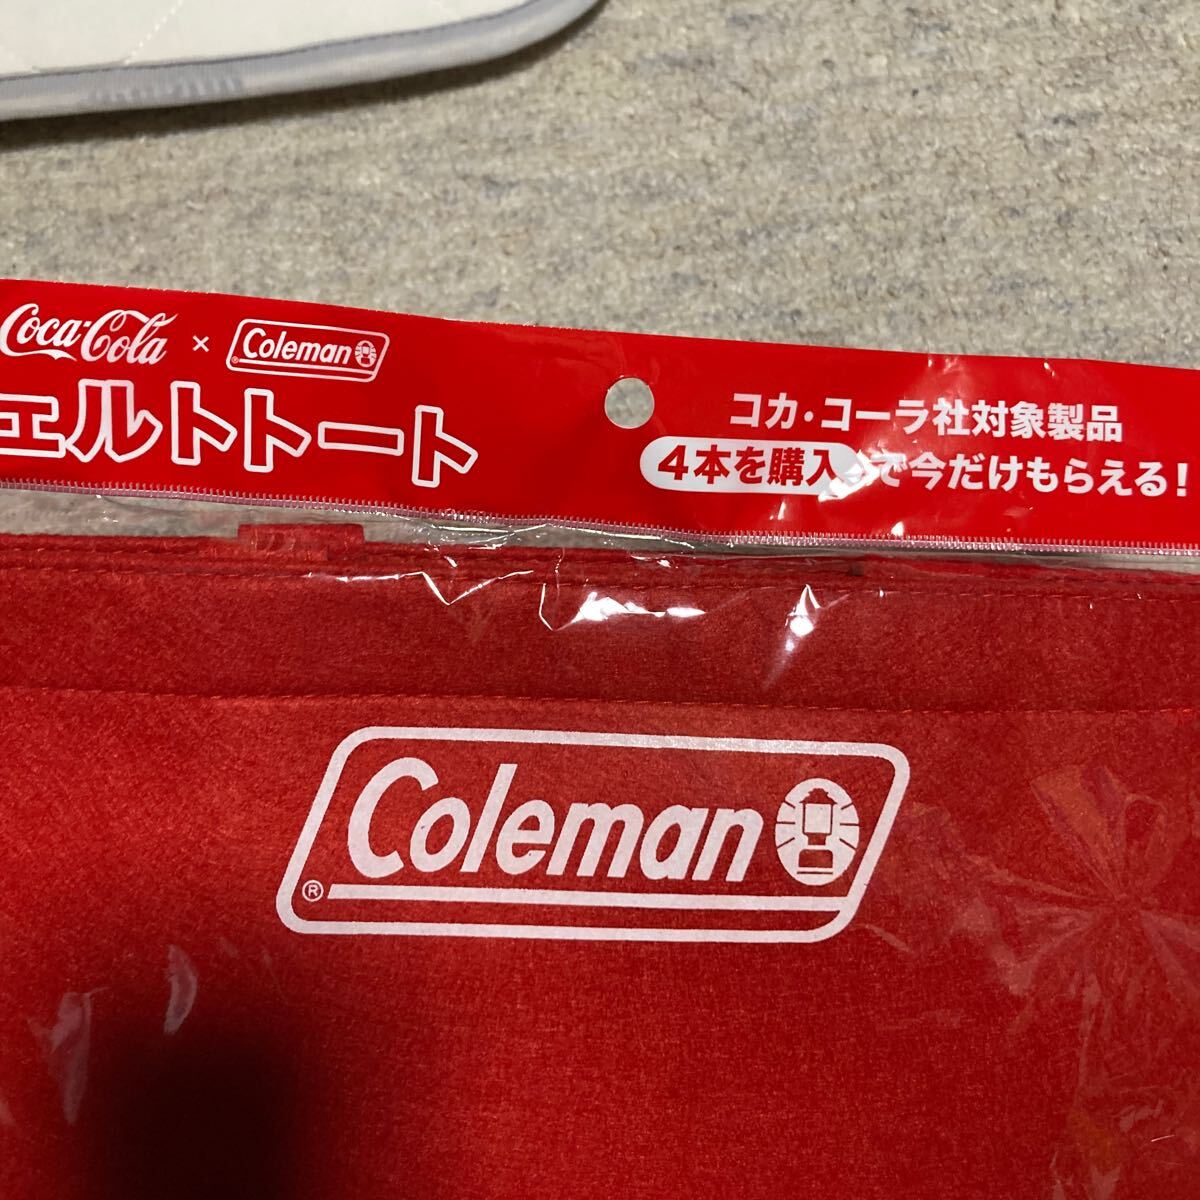 Coleman Coleman Coca Cola felt tote bag red tote bag 